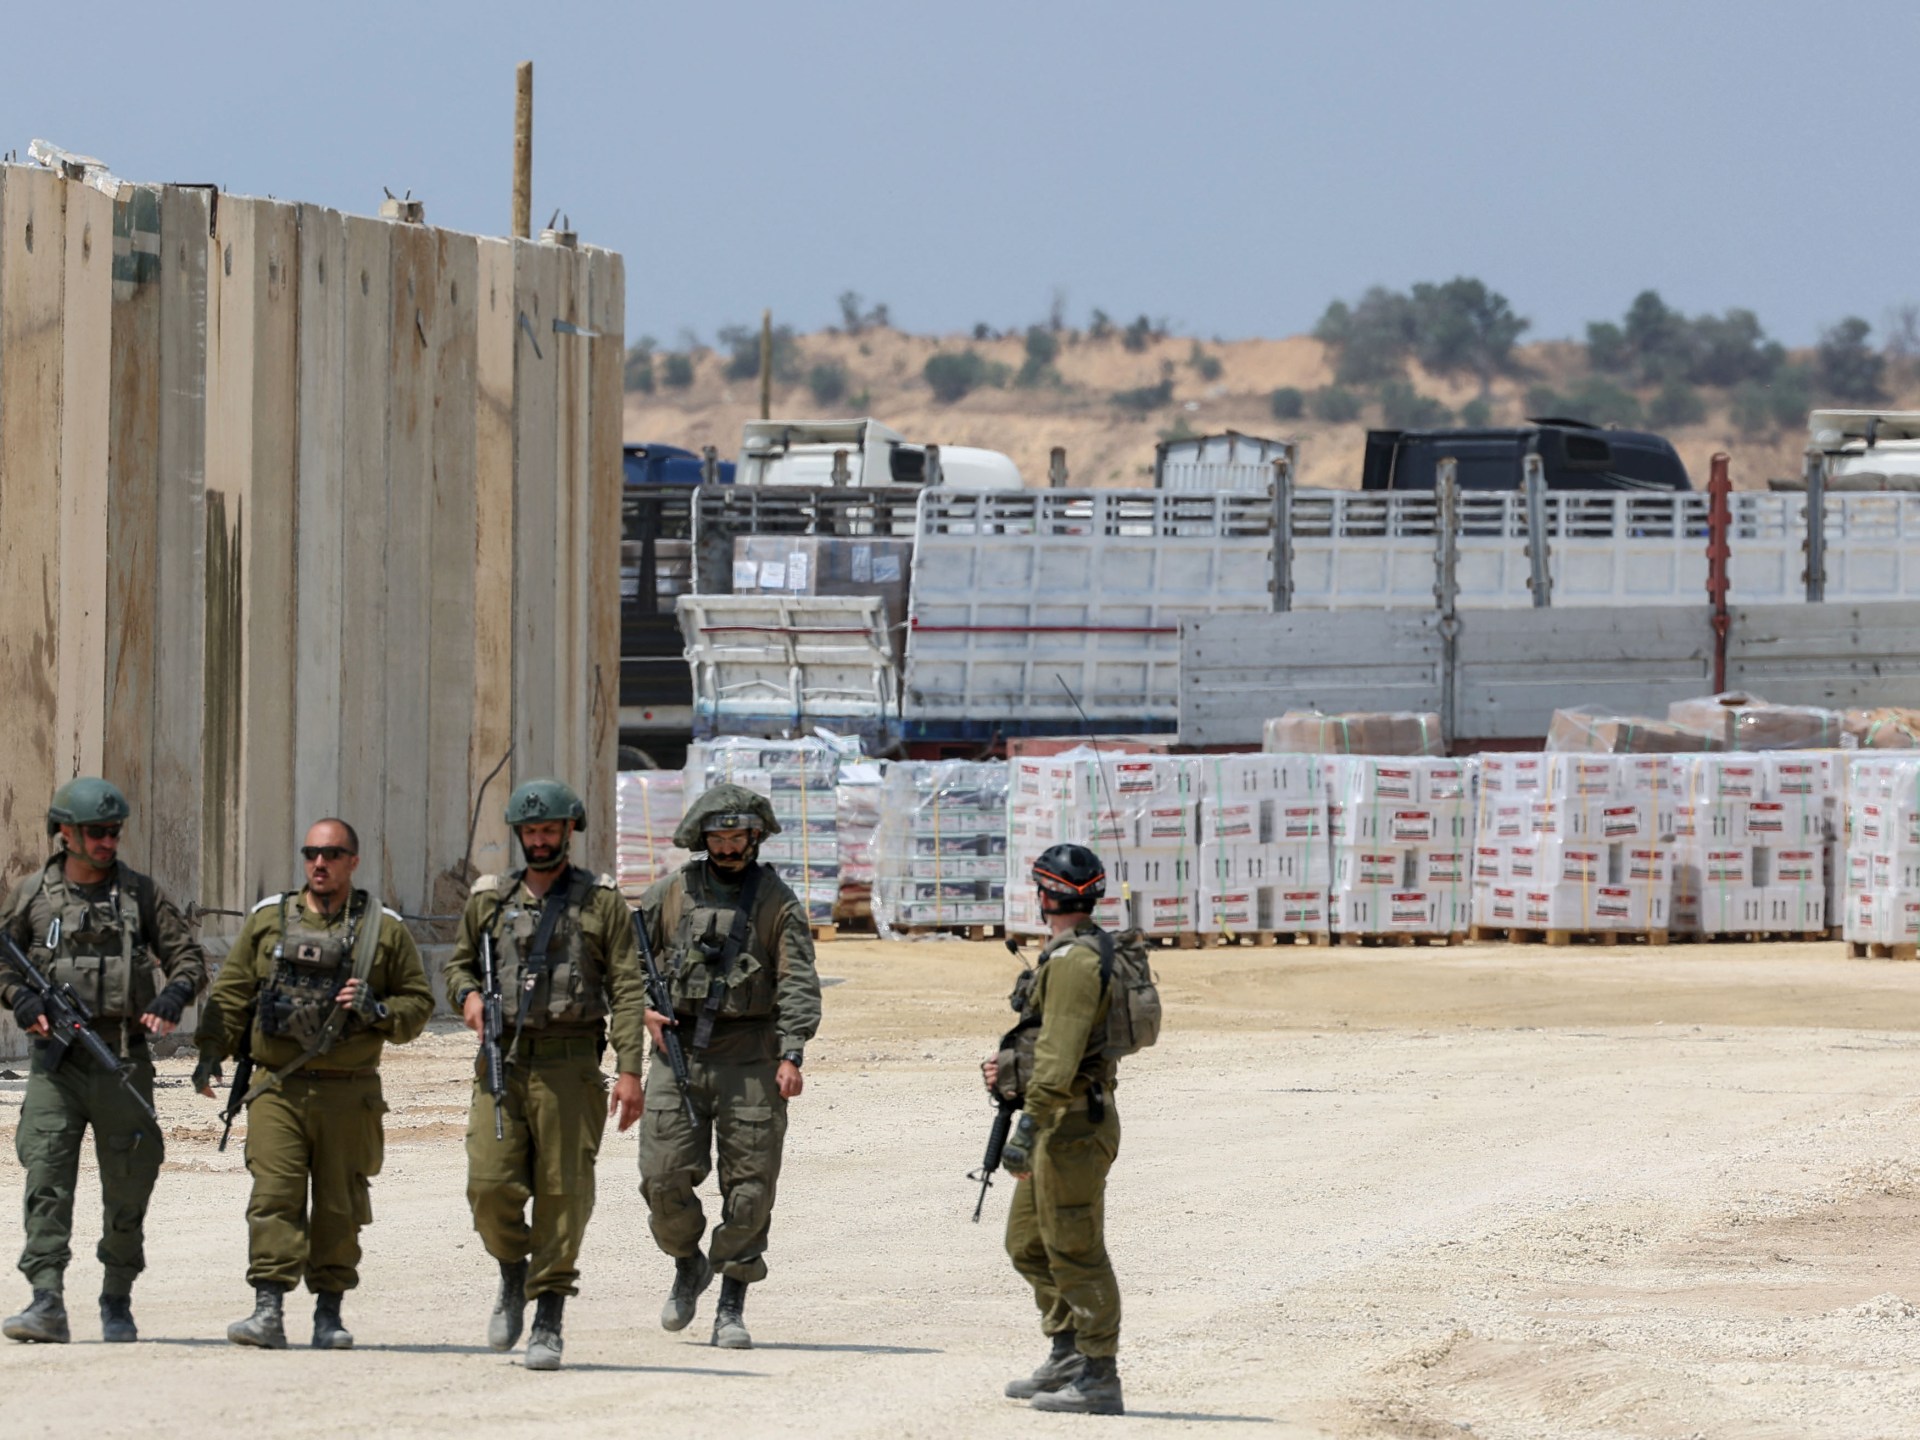 أسوشيتد برس: خيارات إسرائيل في قطاع غزة أحلاها مُر | أخبار – البوكس نيوز